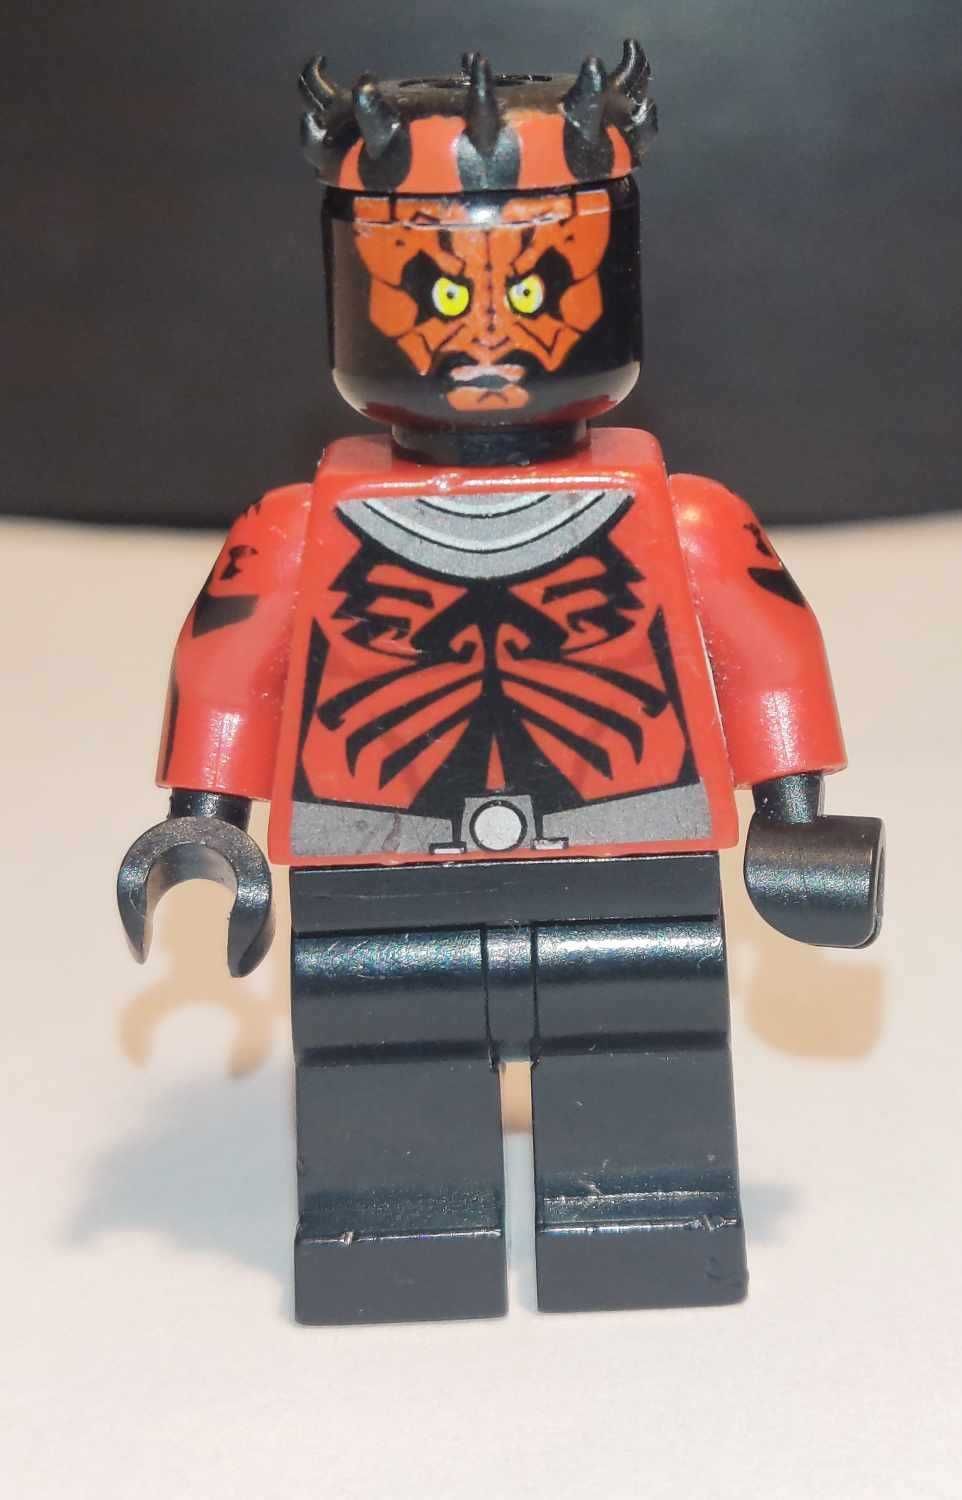 Figurka Lego Star Wars - sw0384 - Darth Maul - Printed Red Arms